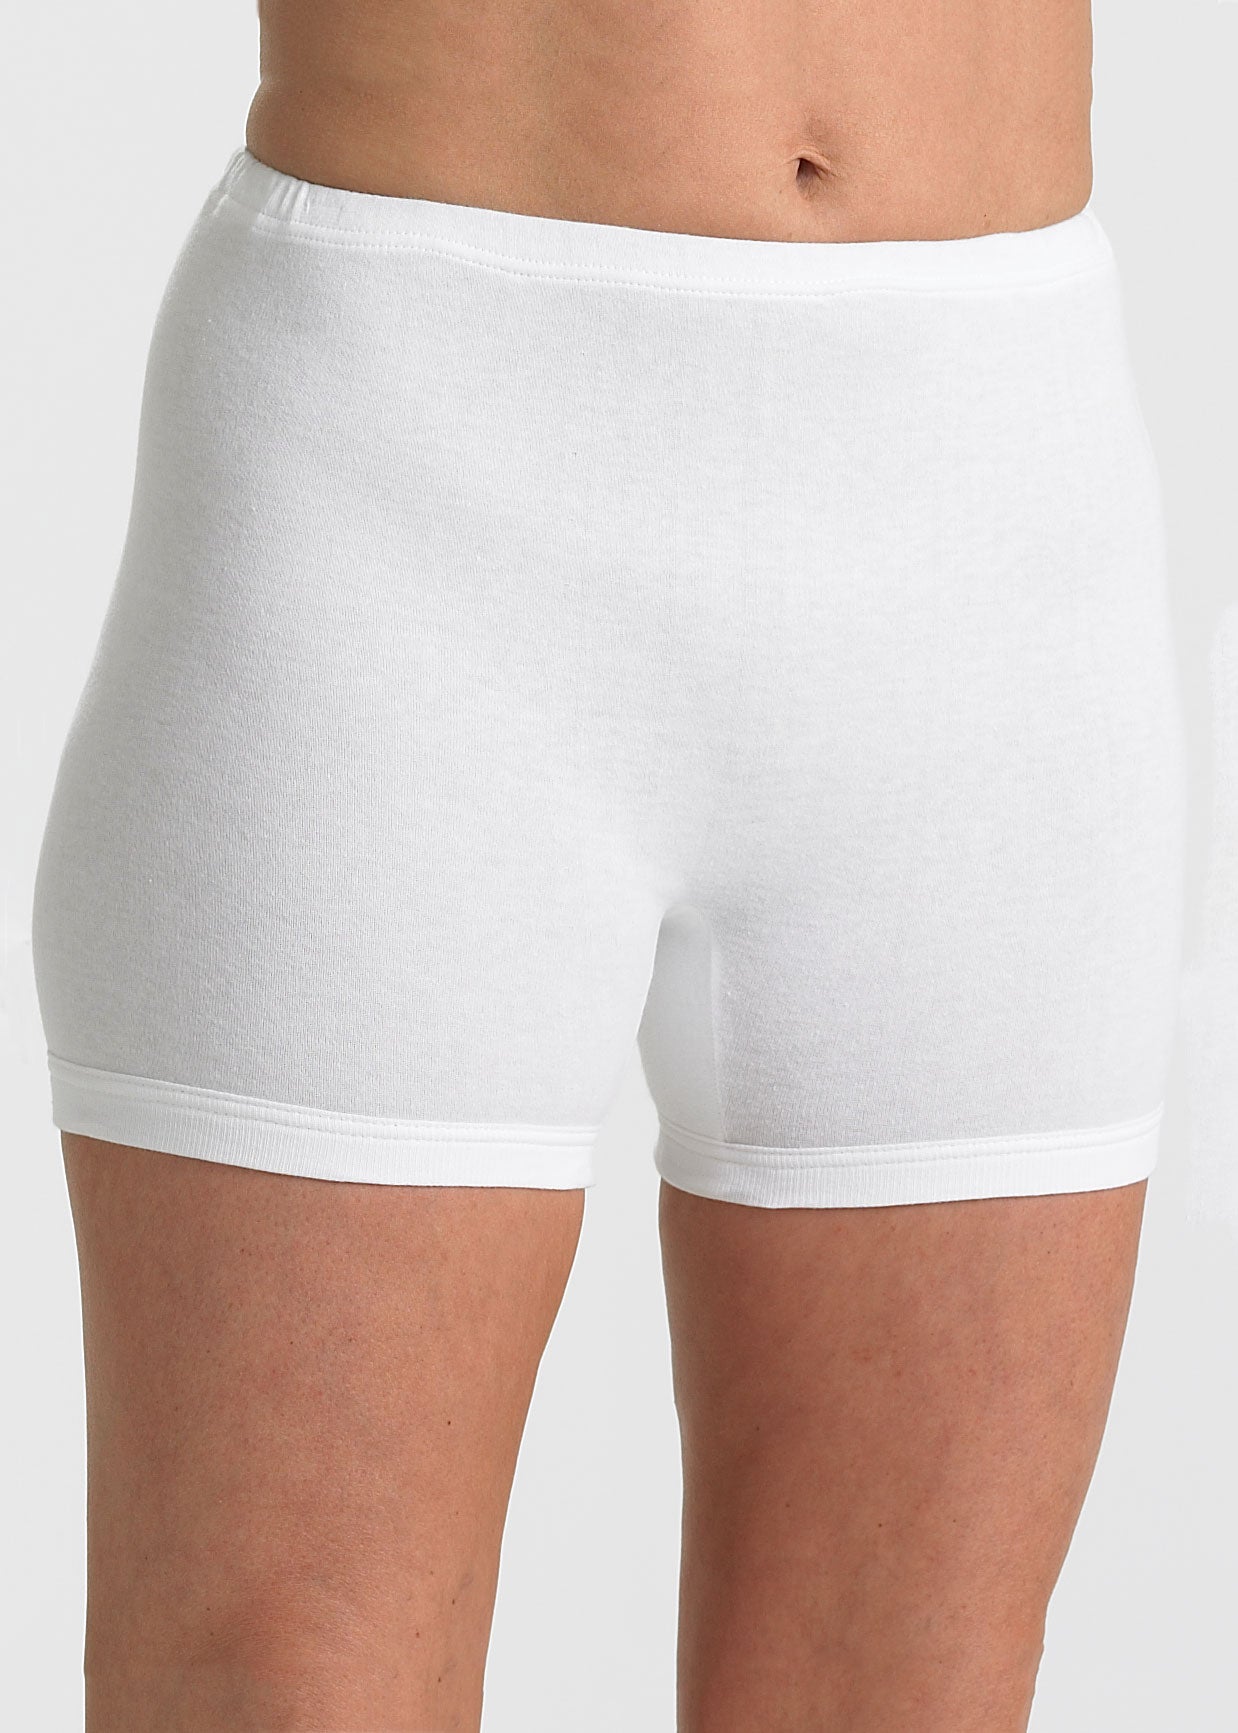 Women’s Cotton Long Leg Interlock Pants